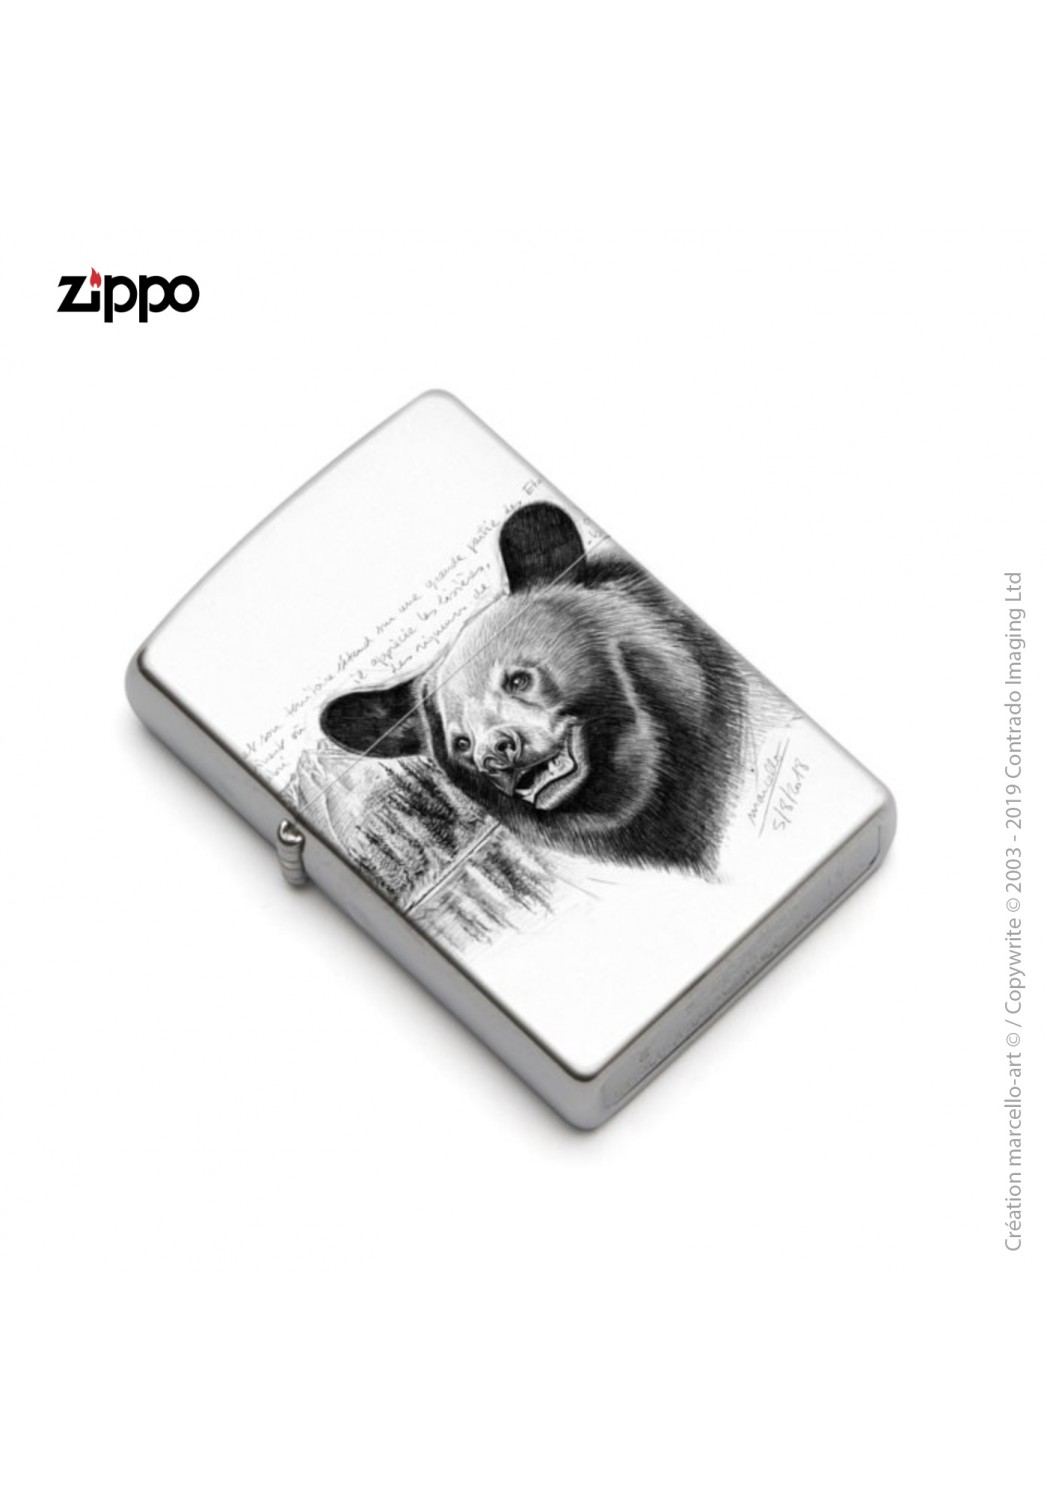 Marcello-art : Accessoires de décoration Zippo 382 tête ours noir